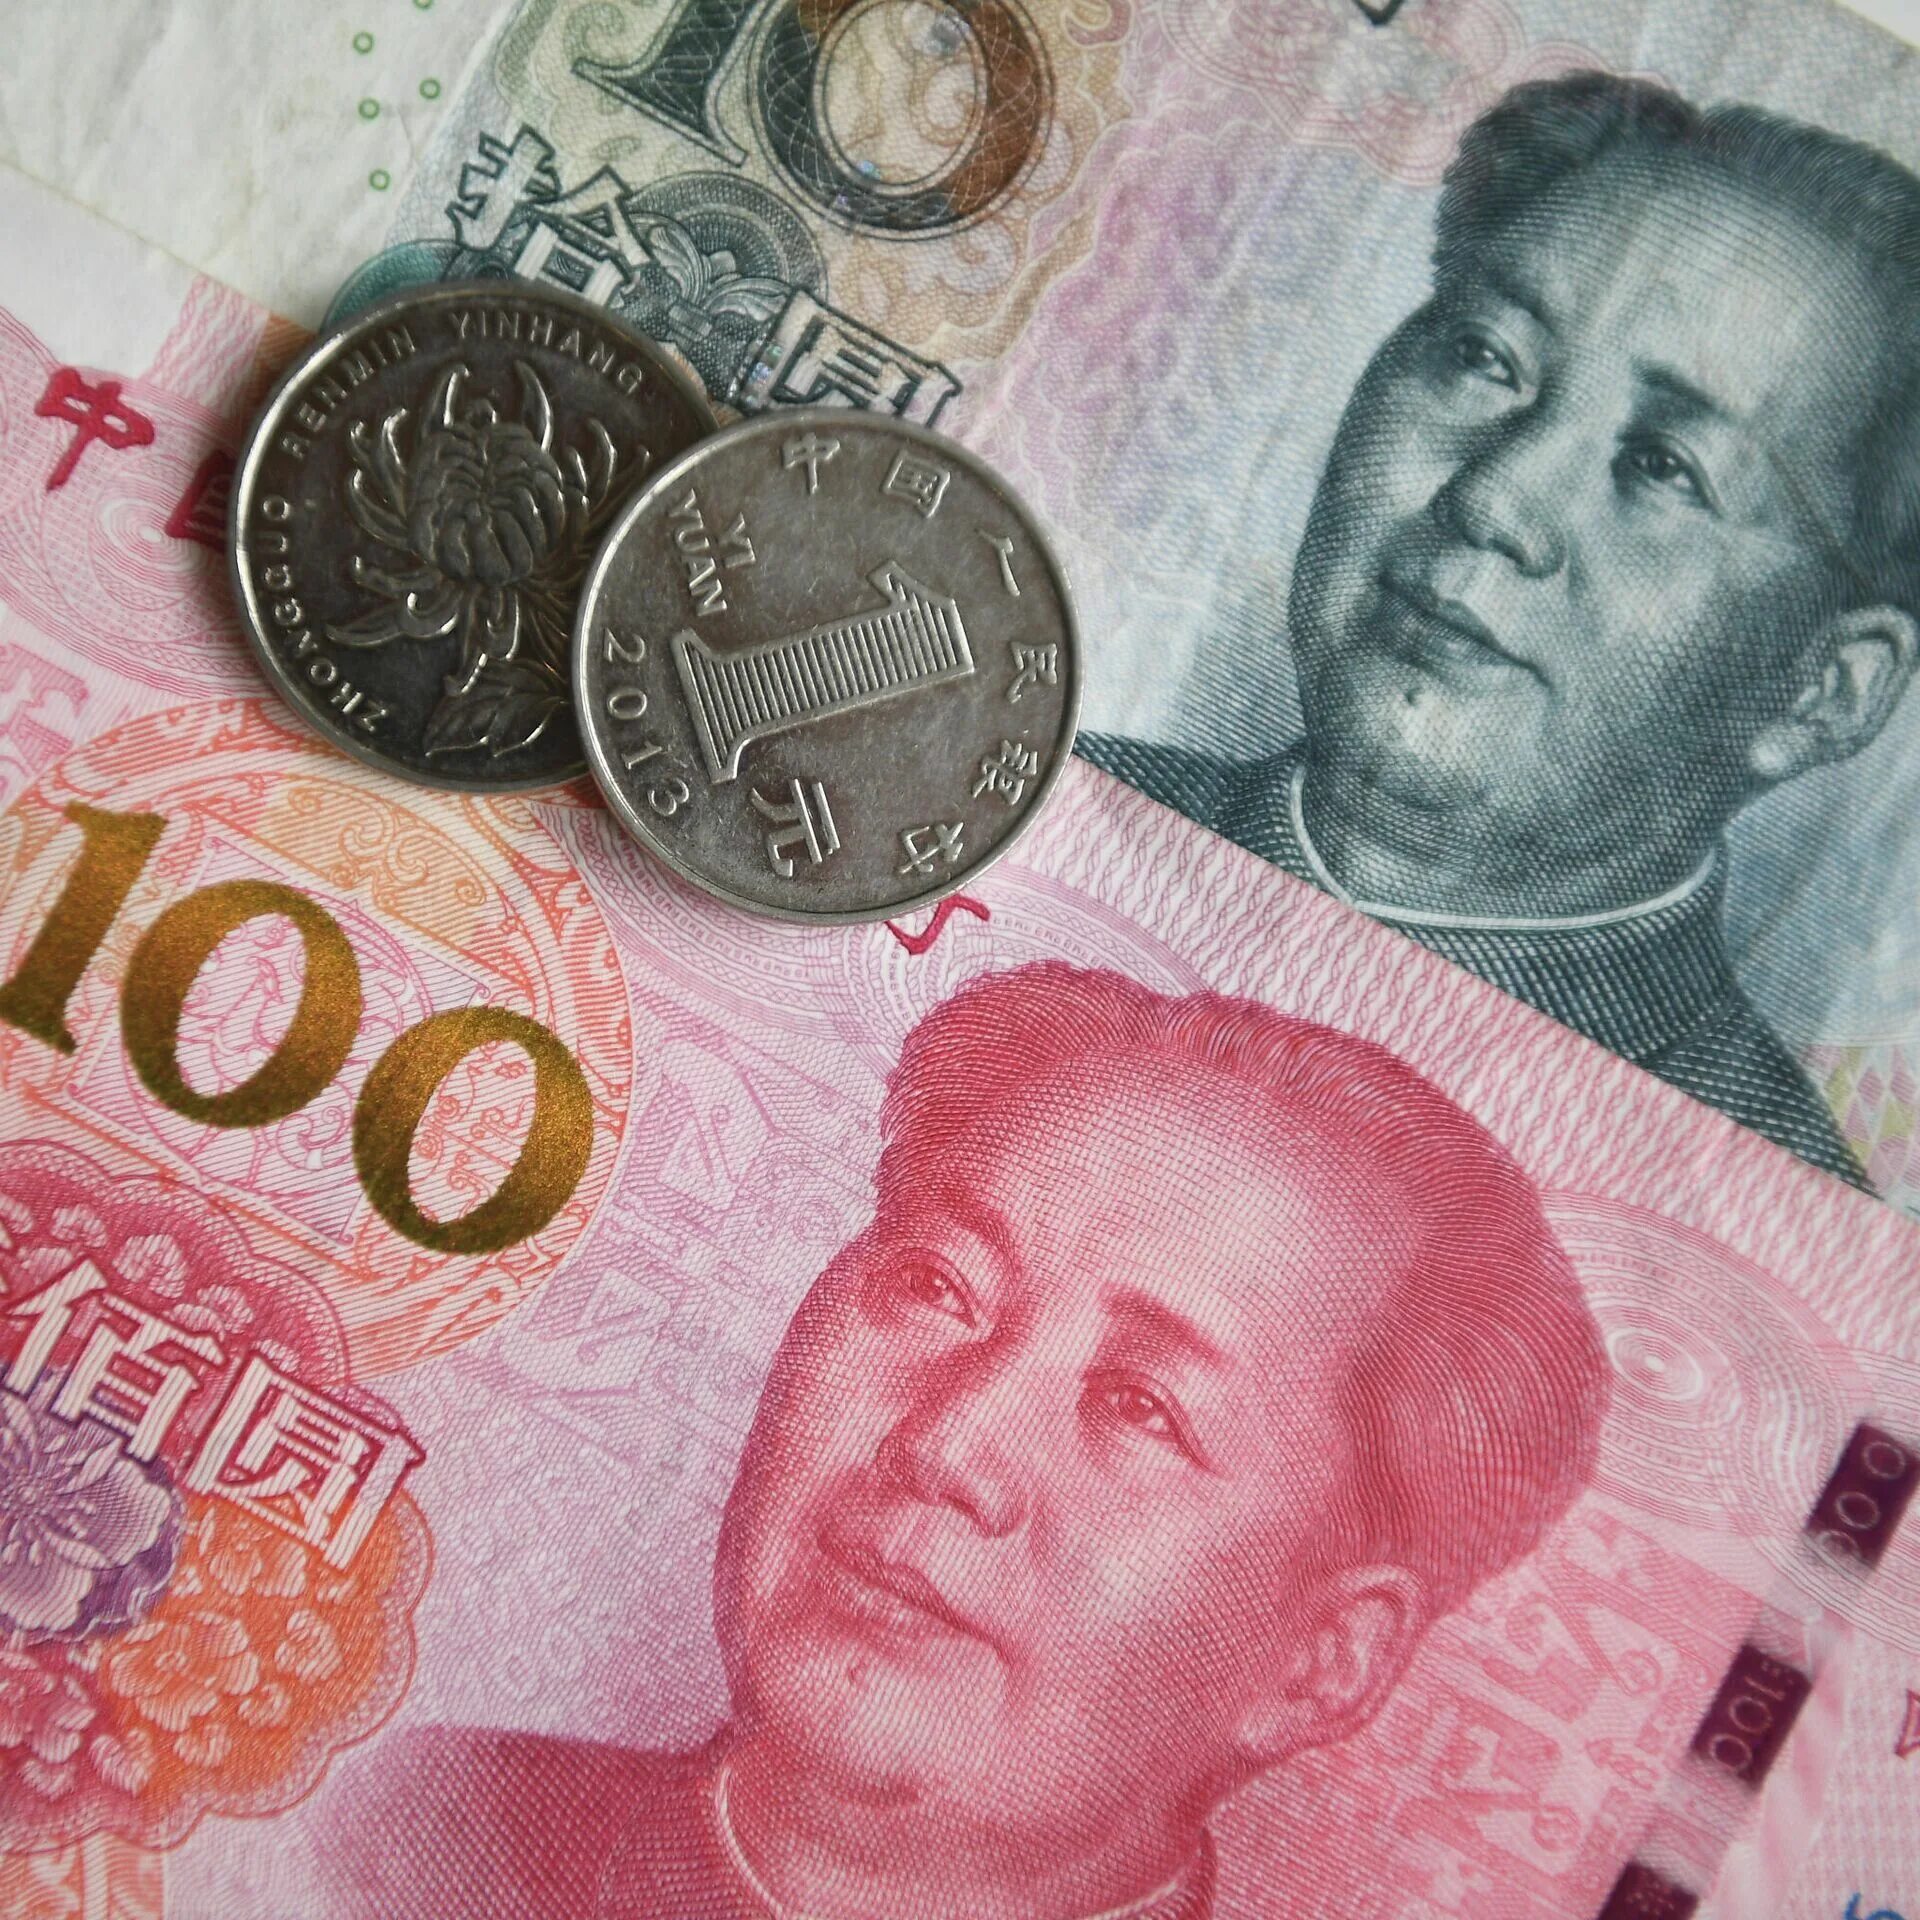 Обменять китайские юани. Китайская валюта. Деньги Китая. Китайская валюта юань. Юань (валюта).